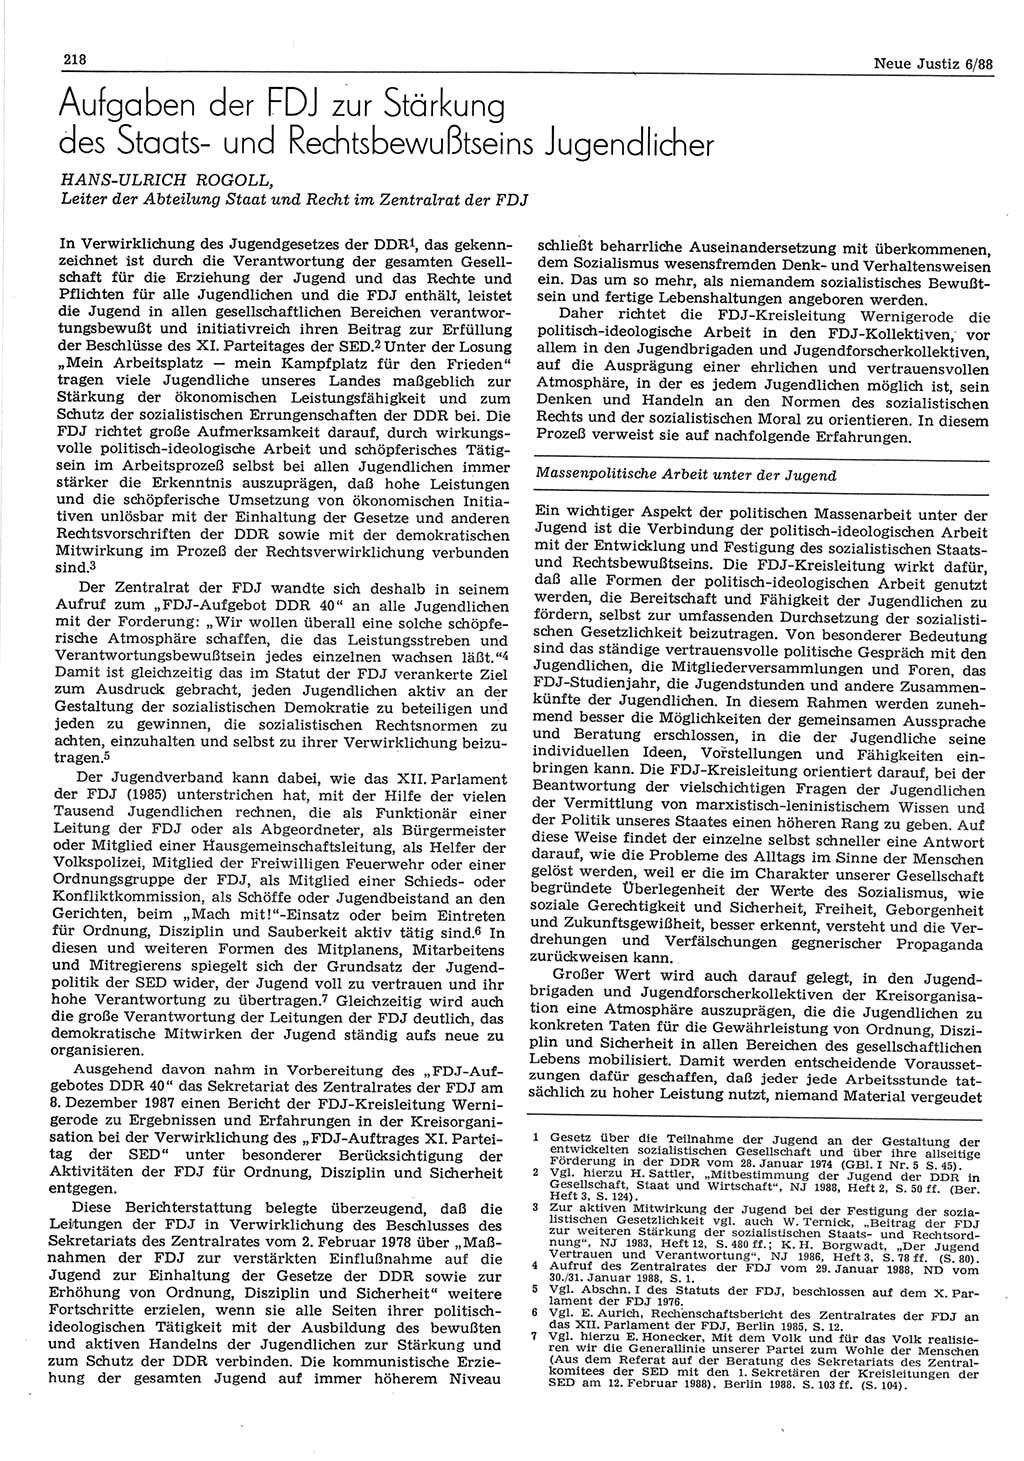 Neue Justiz (NJ), Zeitschrift für sozialistisches Recht und Gesetzlichkeit [Deutsche Demokratische Republik (DDR)], 42. Jahrgang 1988, Seite 218 (NJ DDR 1988, S. 218)